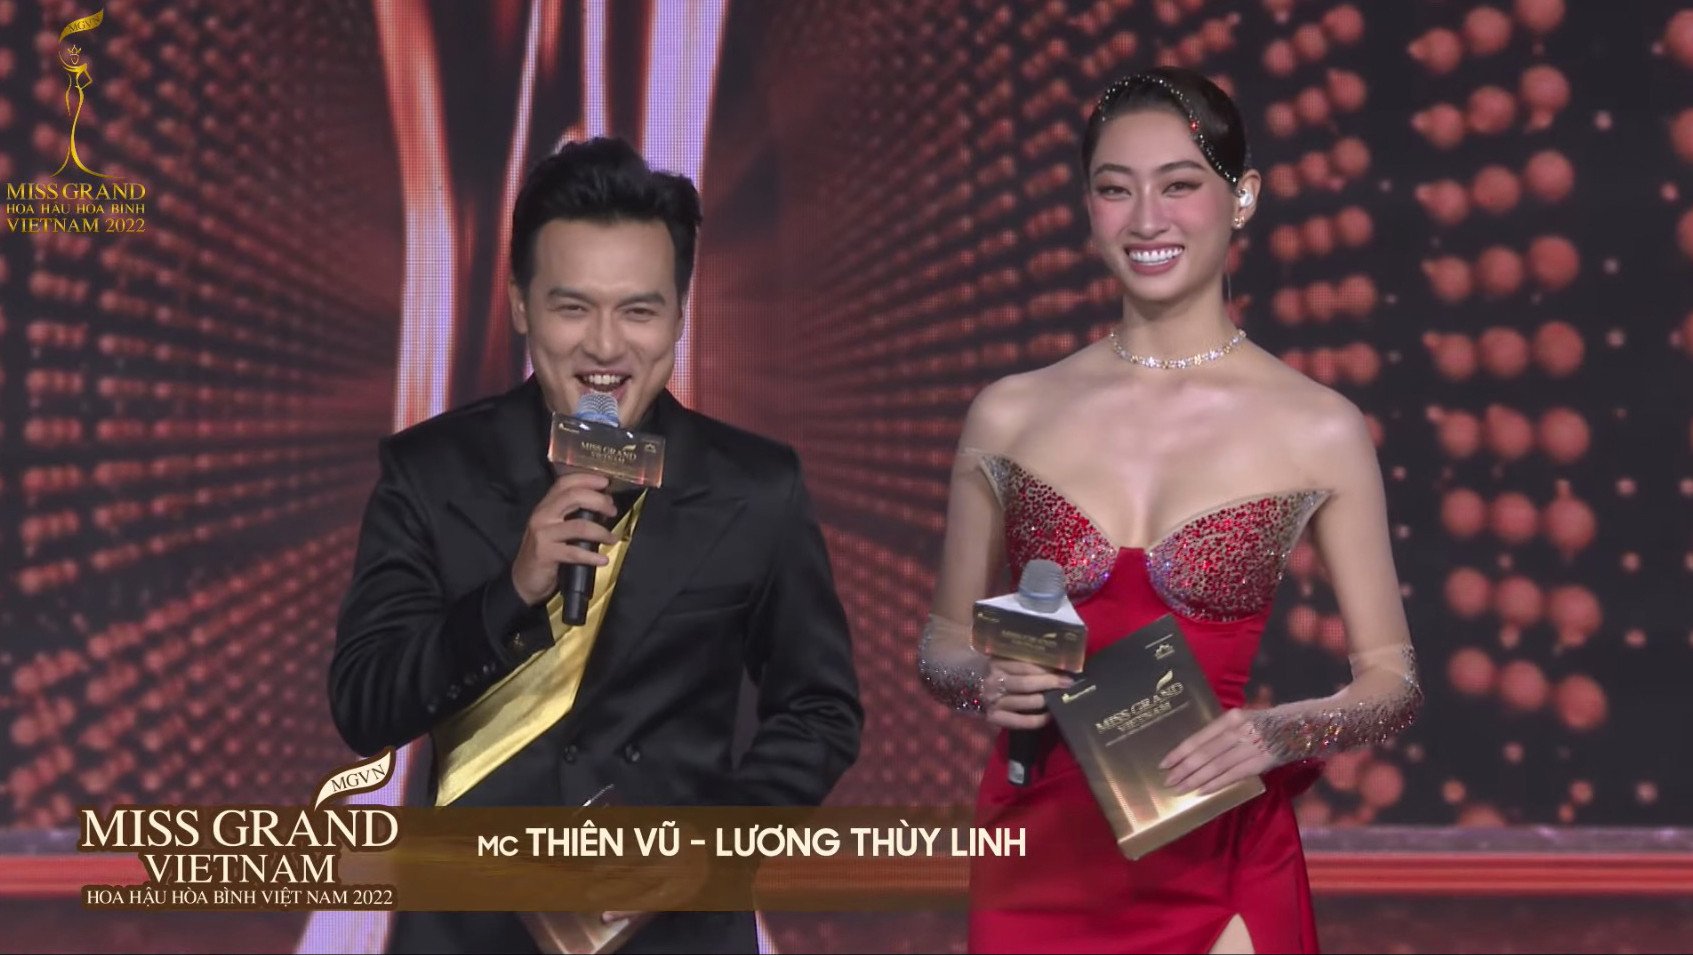 Đoàn Thiên Ân đăng quang Miss Grand Vietnam - Hoa hậu Hòa bình Việt Nam 2022 - 30